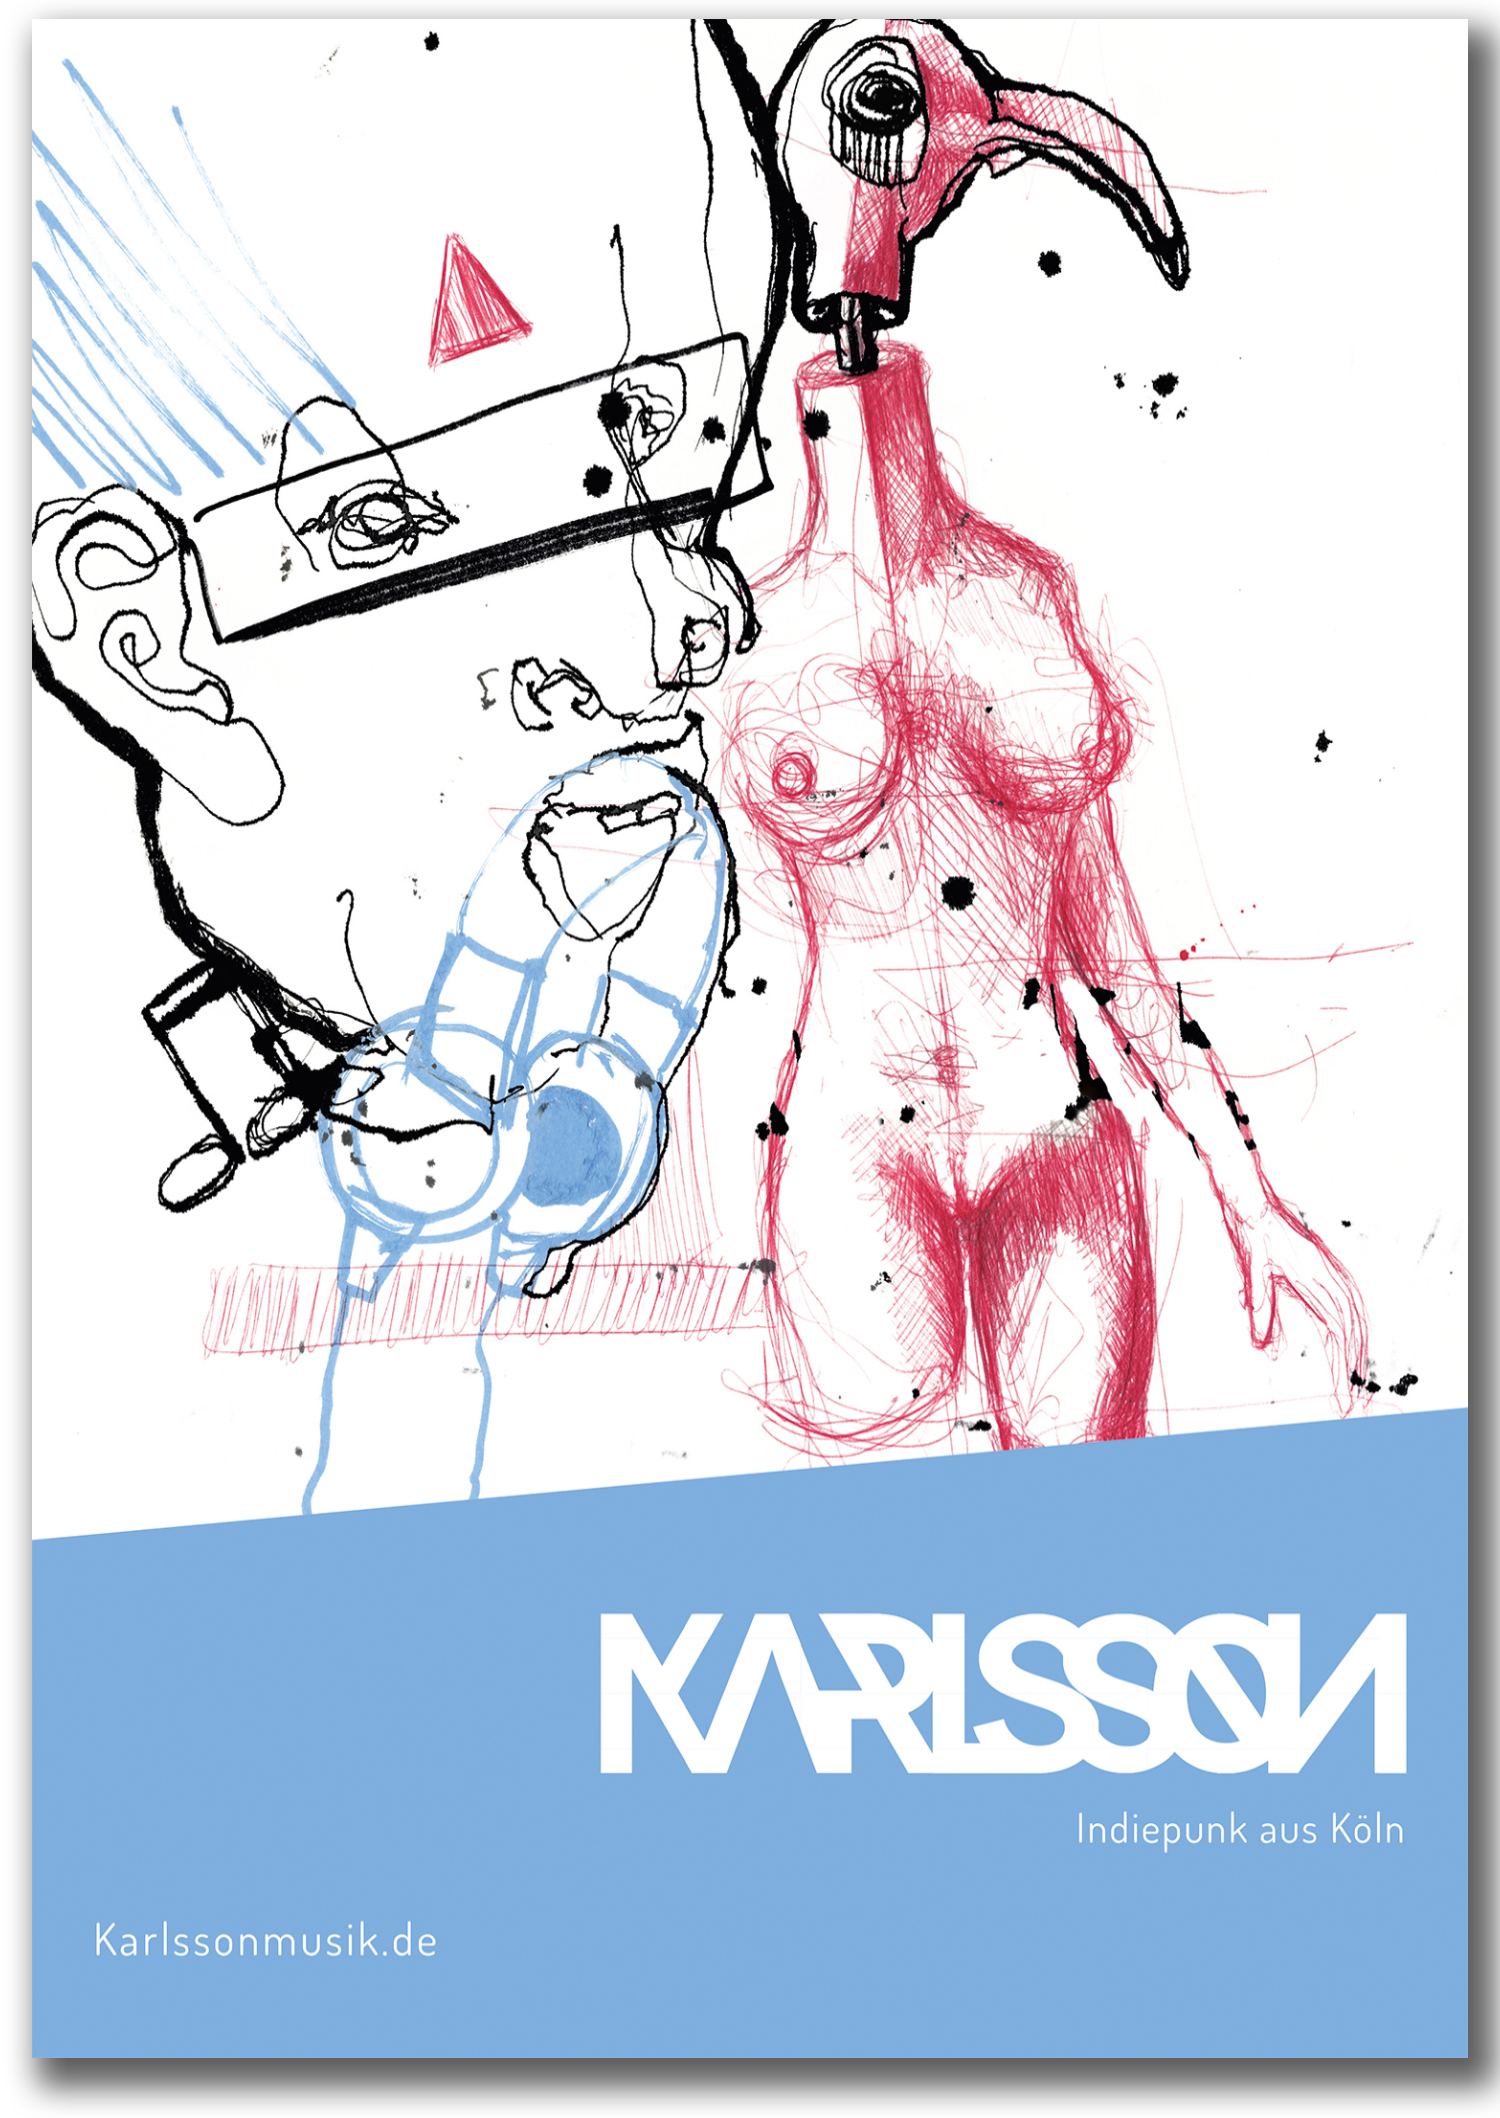 Justinvanwickeren_design_KARLSSON Plakat_final-1_mit schatten